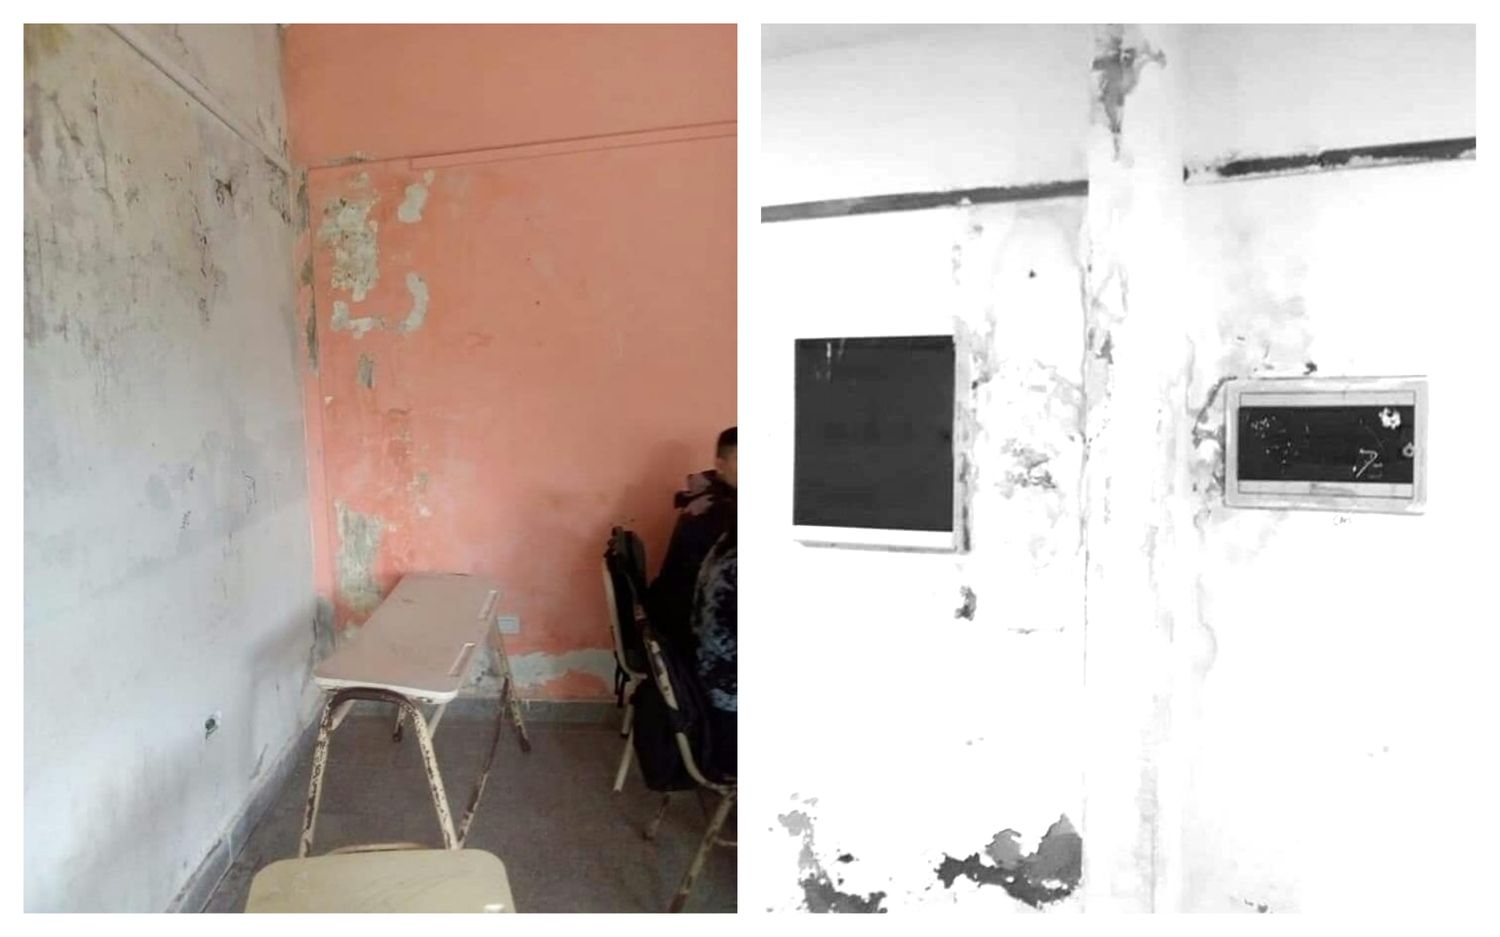 Dos mil alumnos sin clases por problemas de infraestructura en escuelas de La Costa